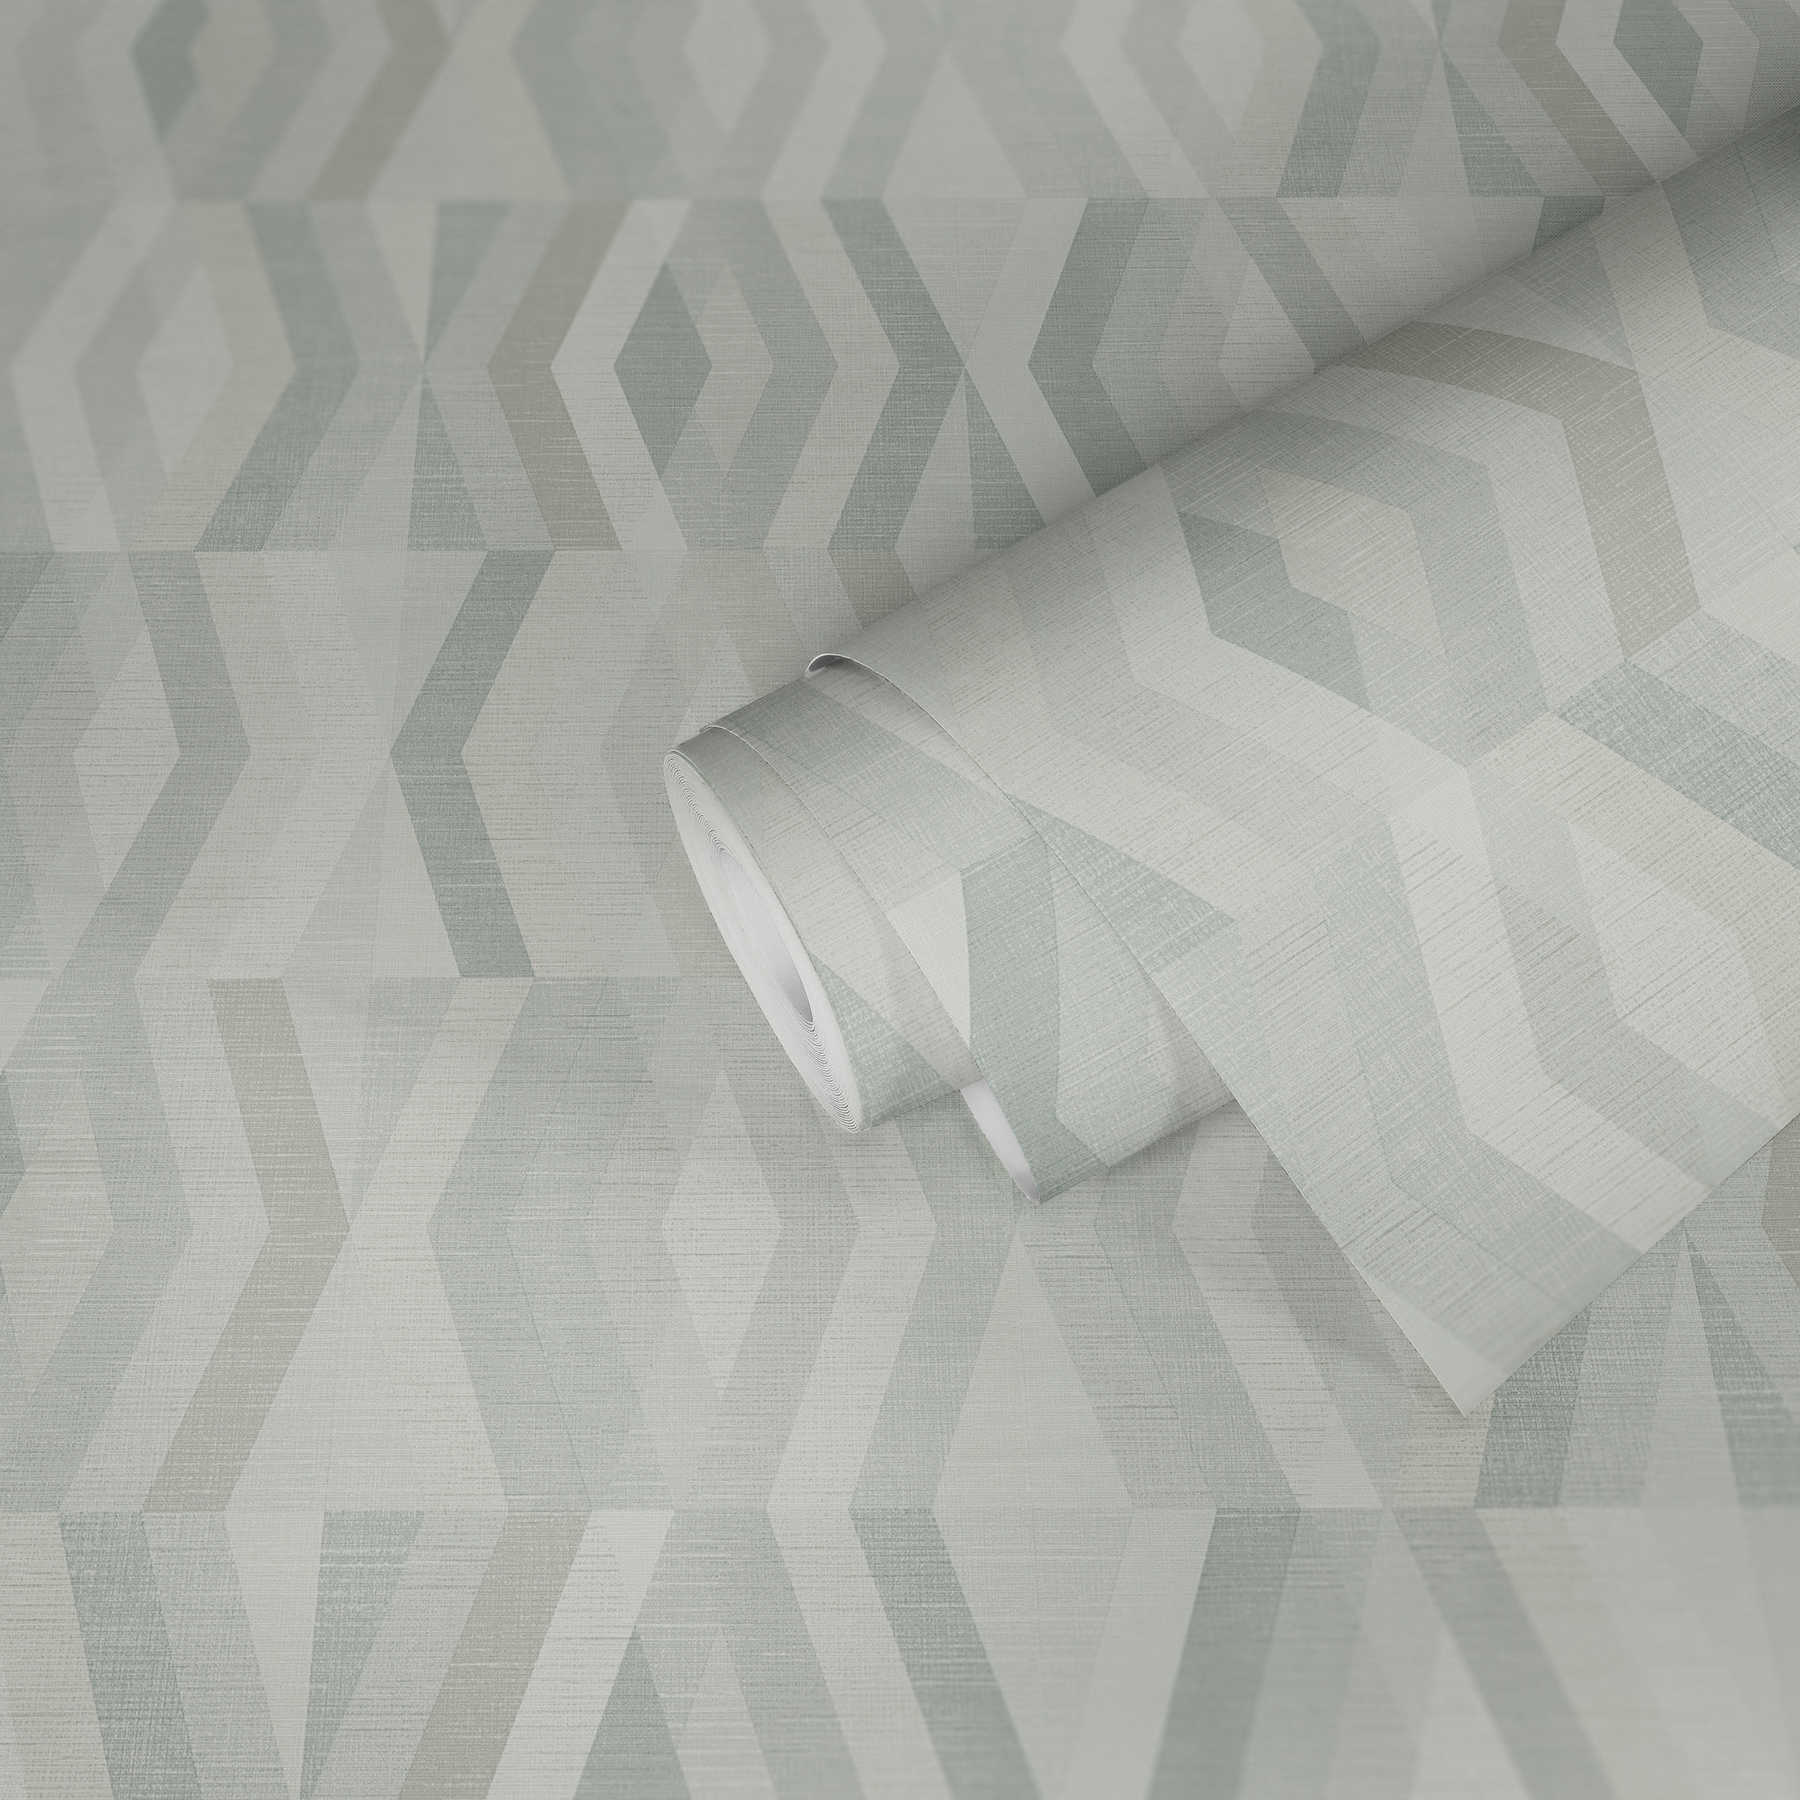             Tapete Scandinavian Stil mit geometrischem Muster - Grau, Beige
        